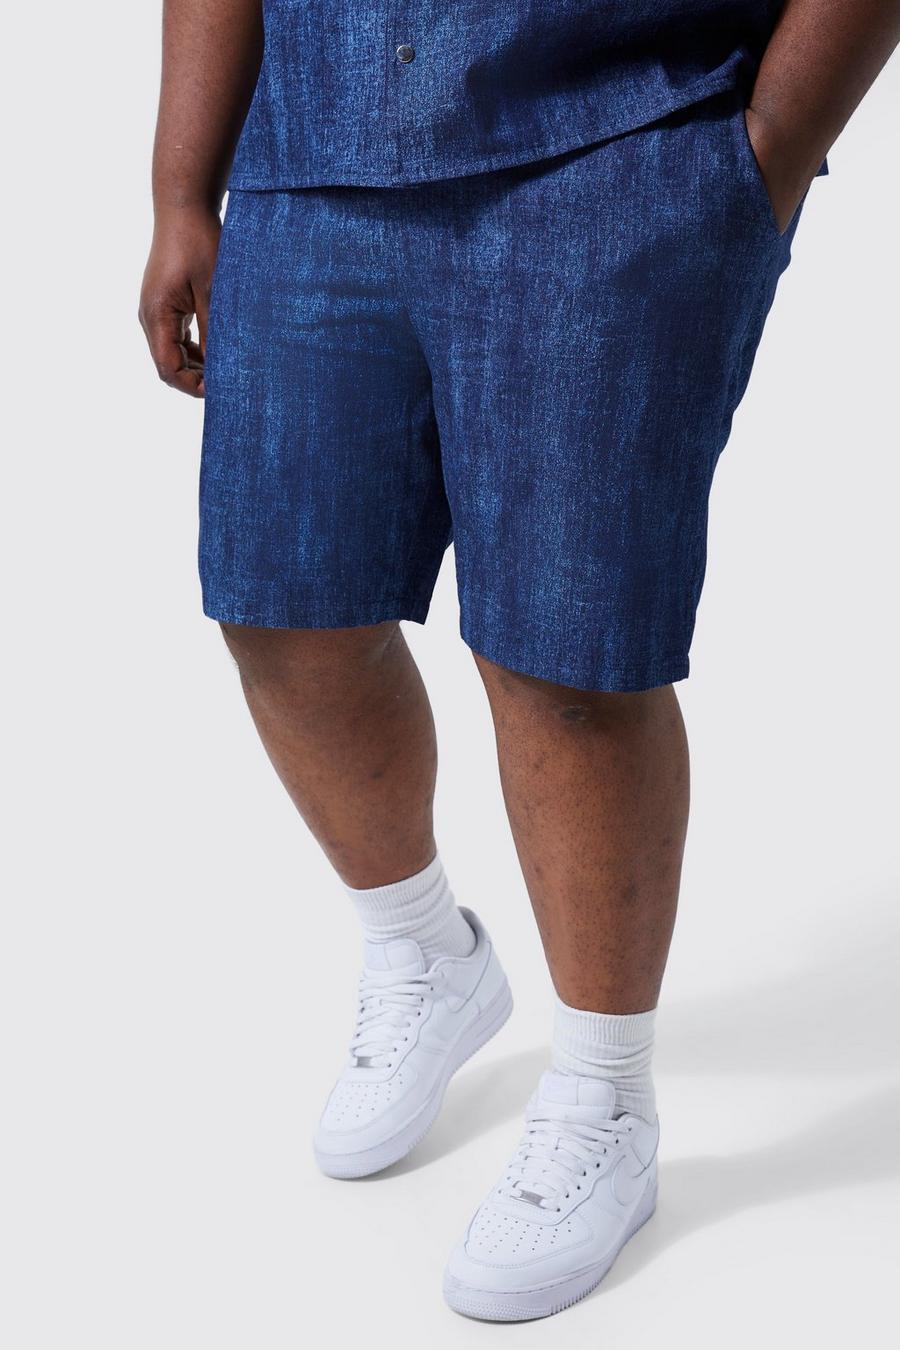 Pantalón corto Plus vaquero holgado con cintura elástica, Mid blue azul